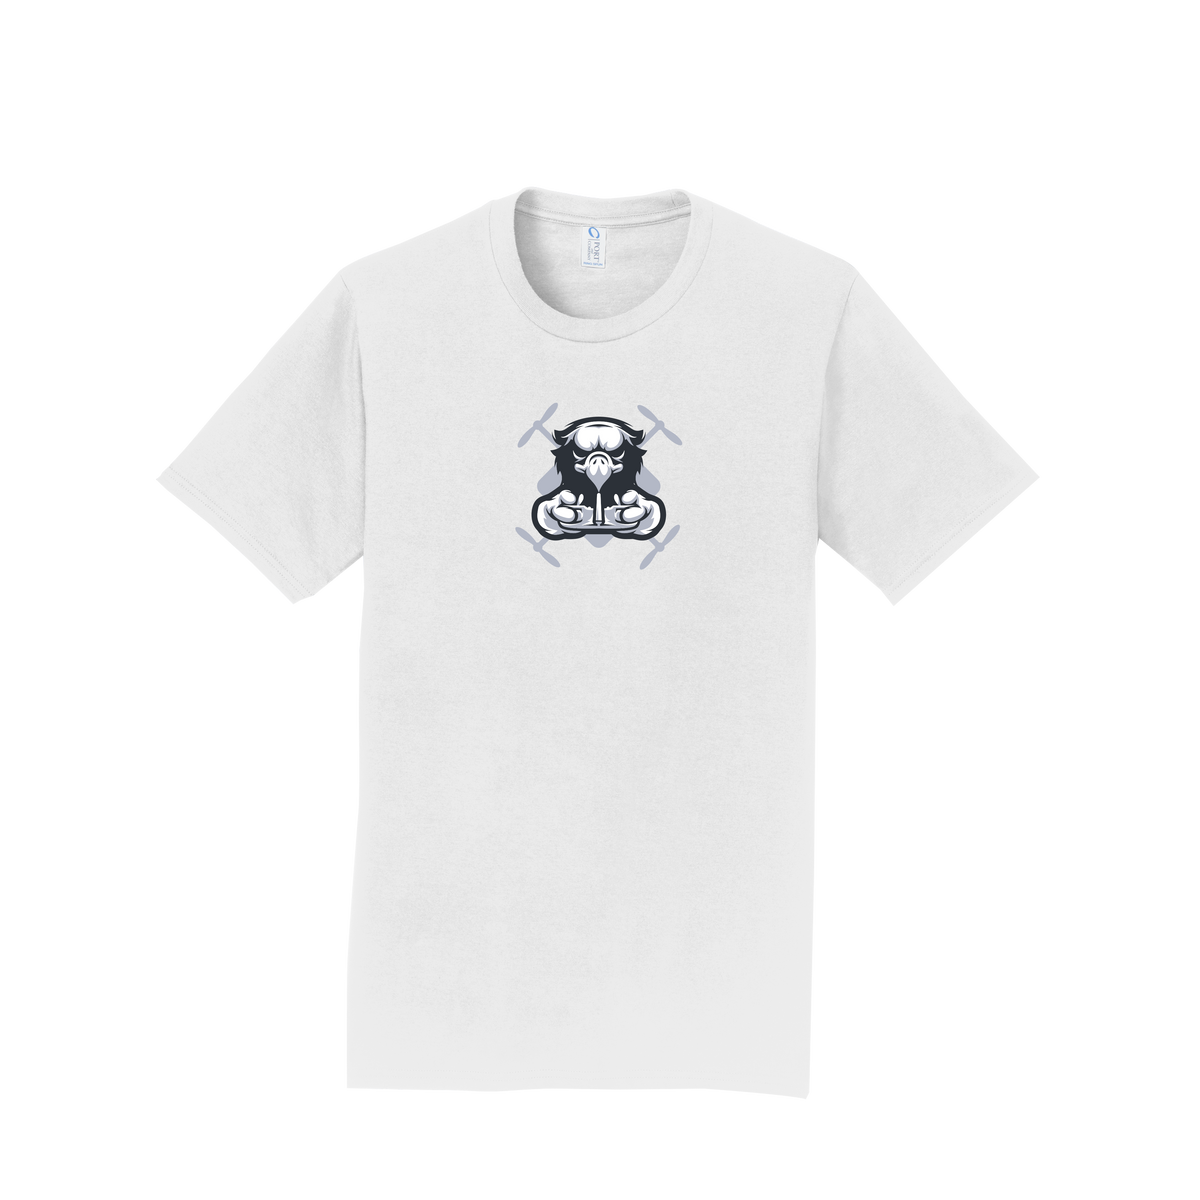 Aviation and Aeronautics Academy Unisex Short Sleeve T-Shirt White